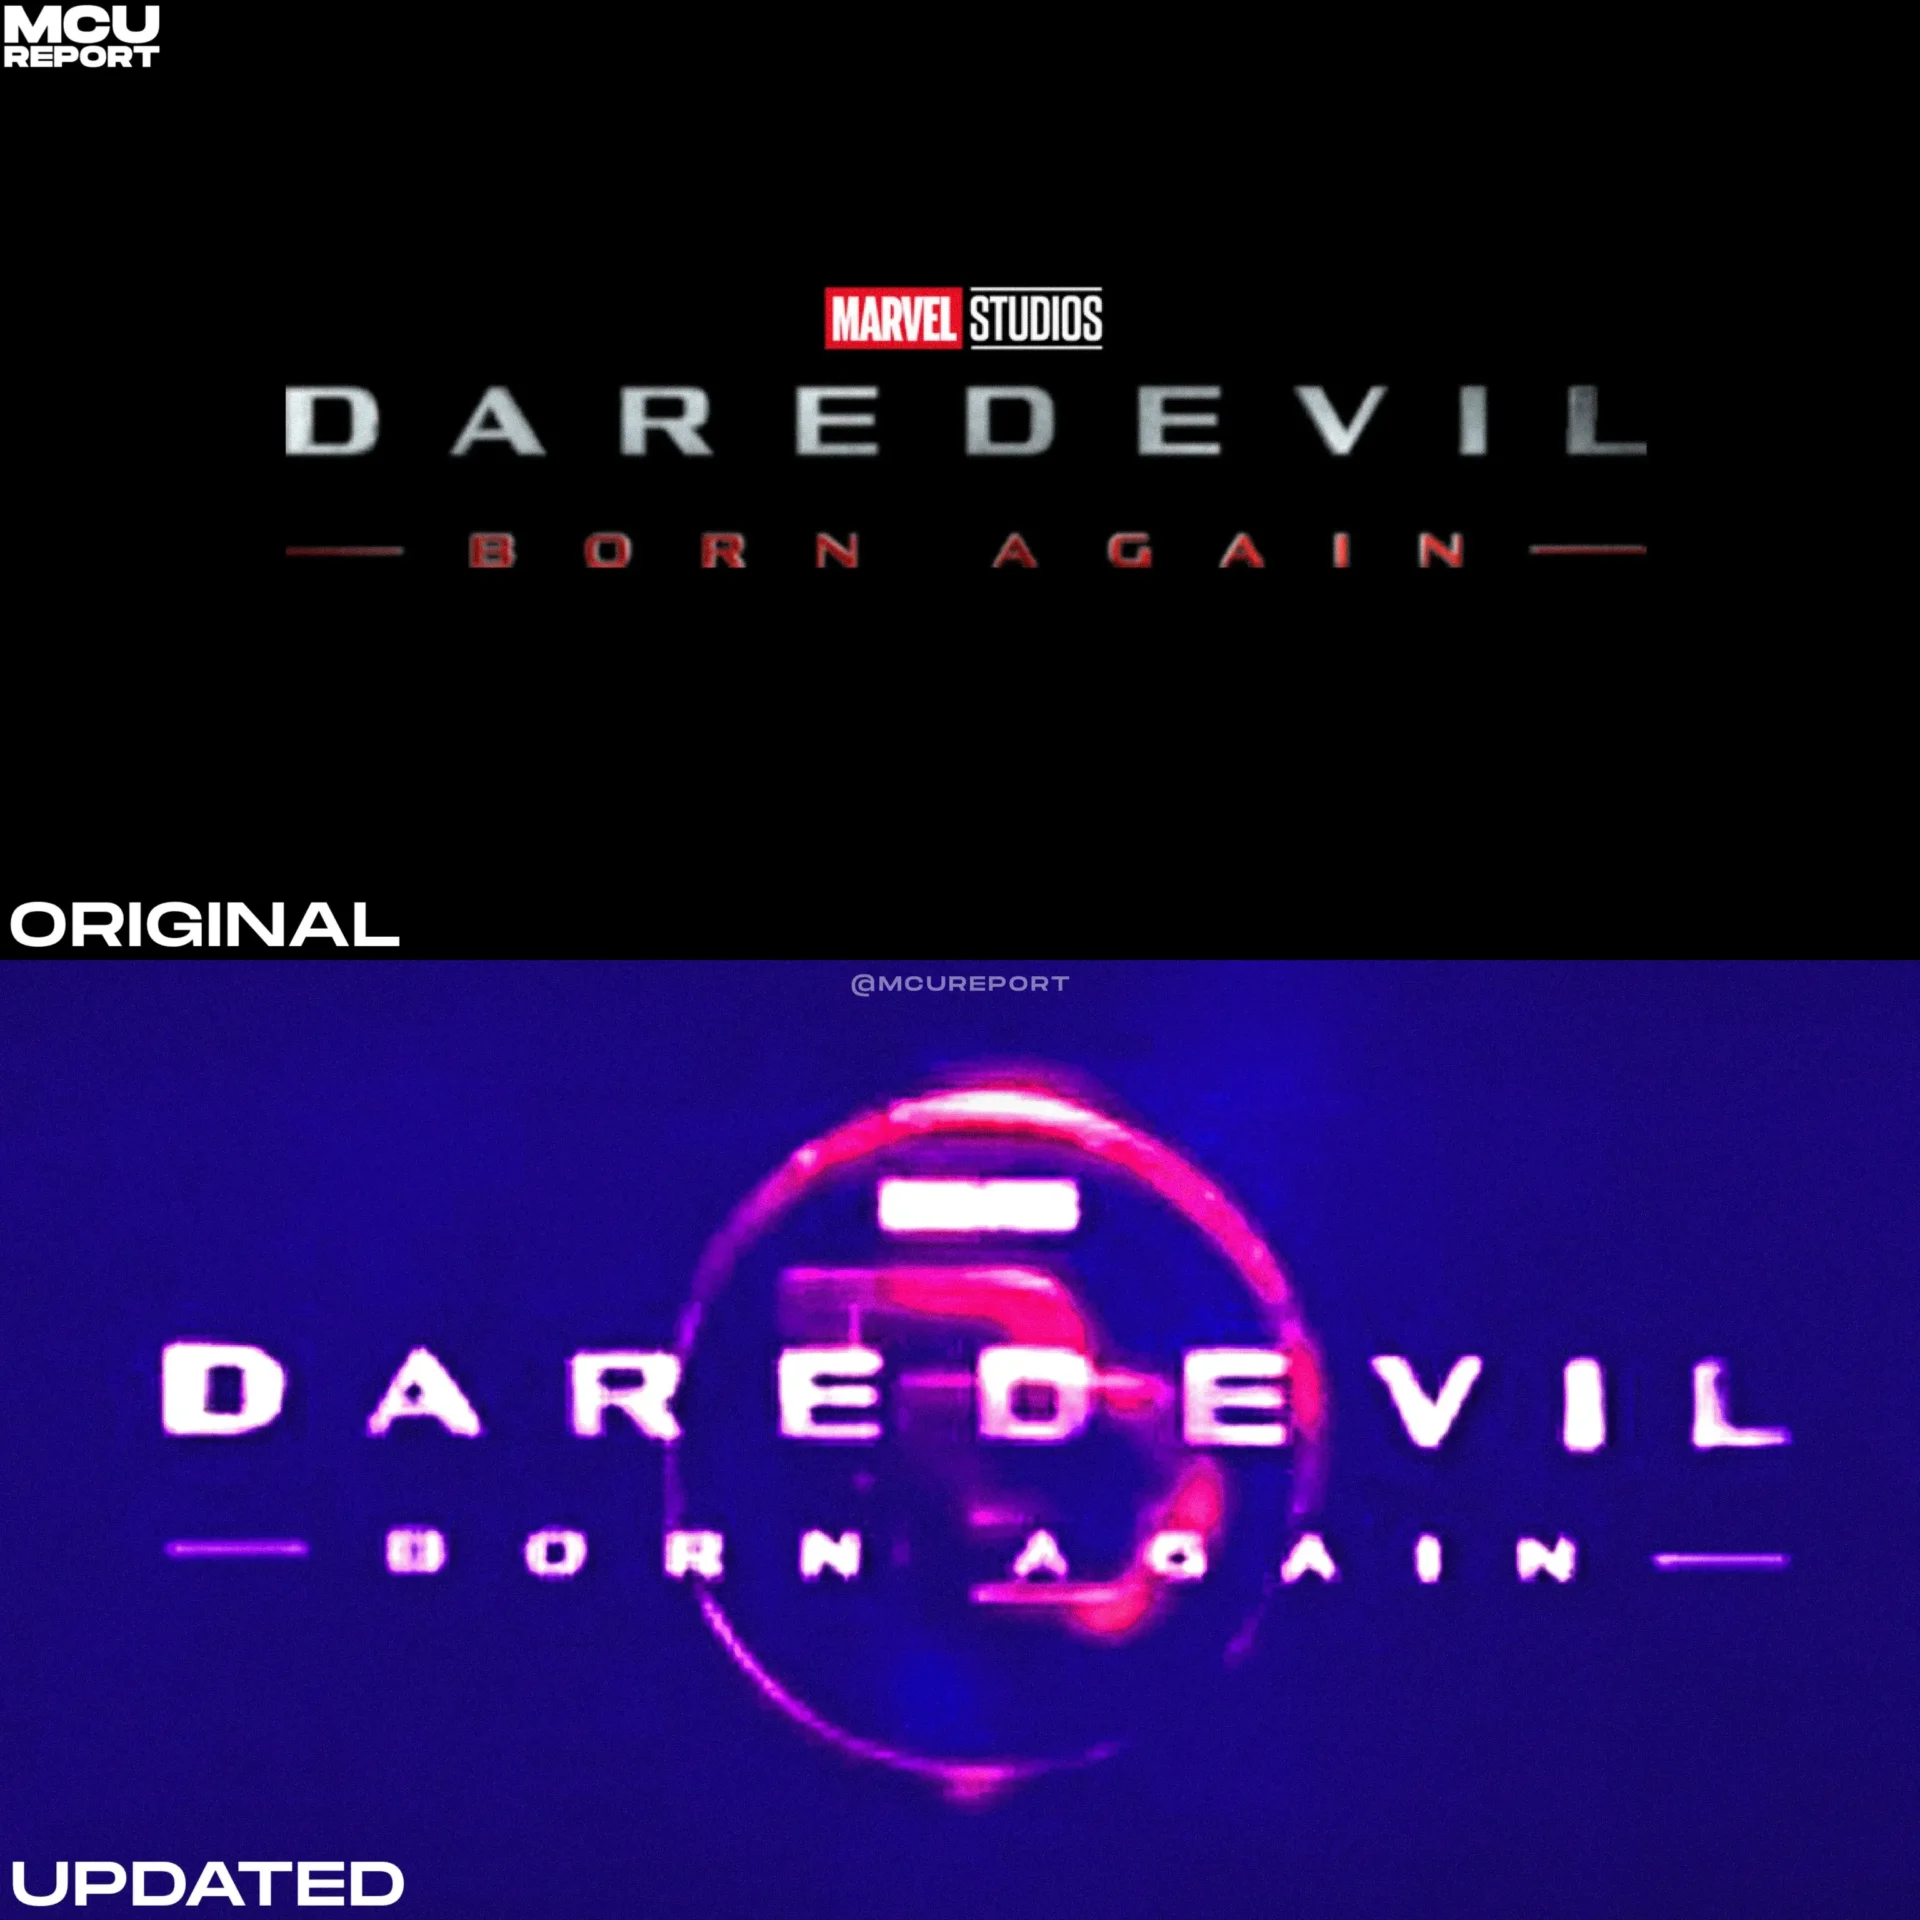 Série do Demolidor tem sua logo atualizada.